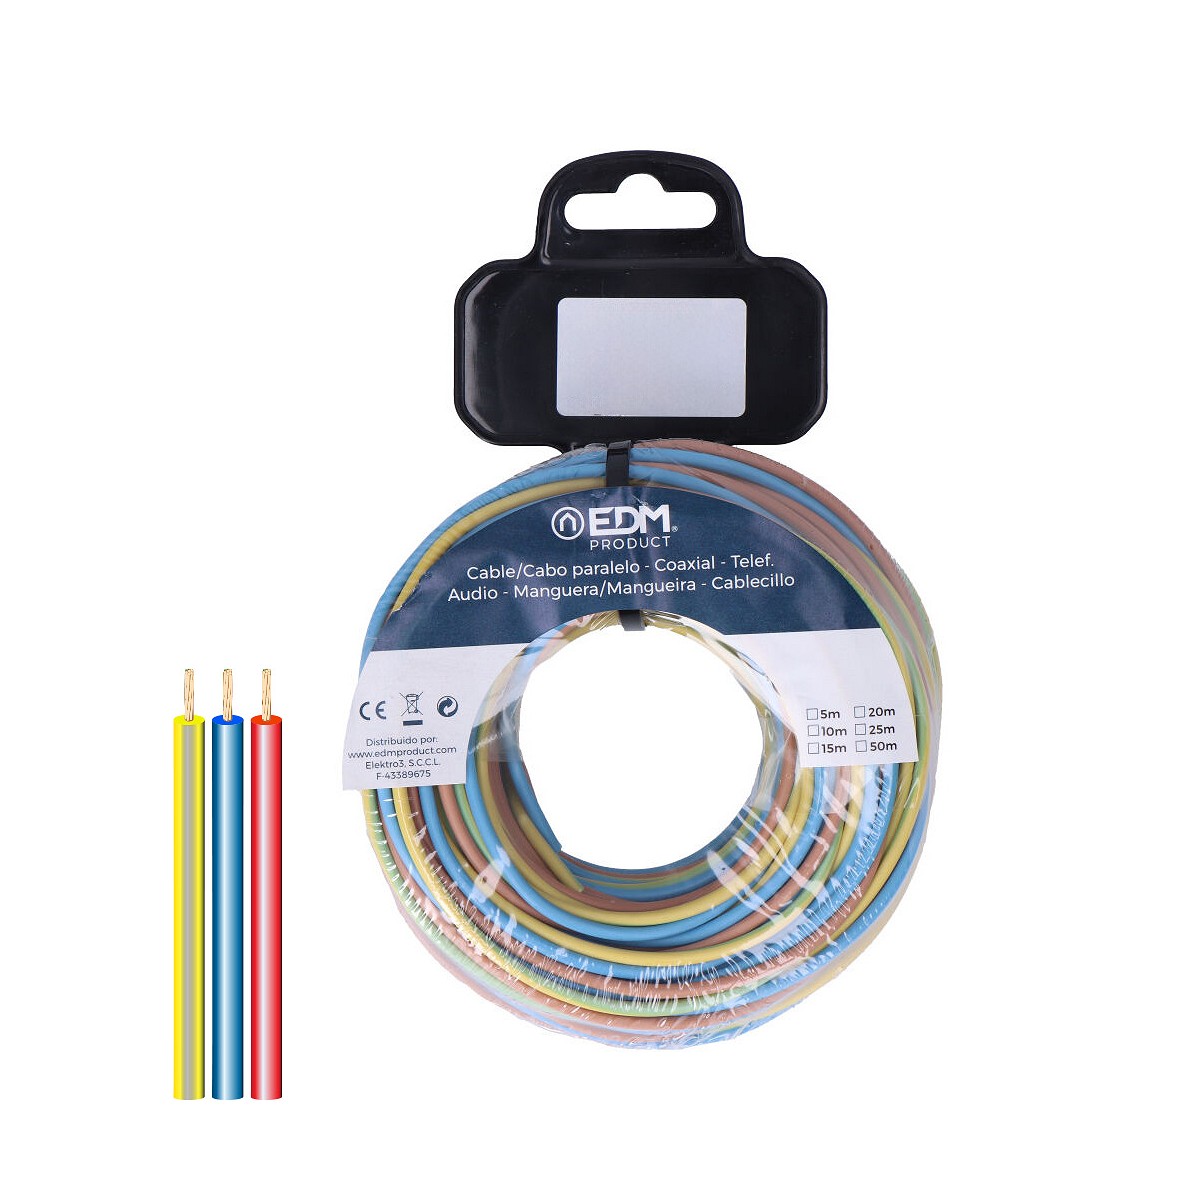 Carrete cablecillo flexible 1,5mm 3 cables (az-m-t) 10m por color total 30m